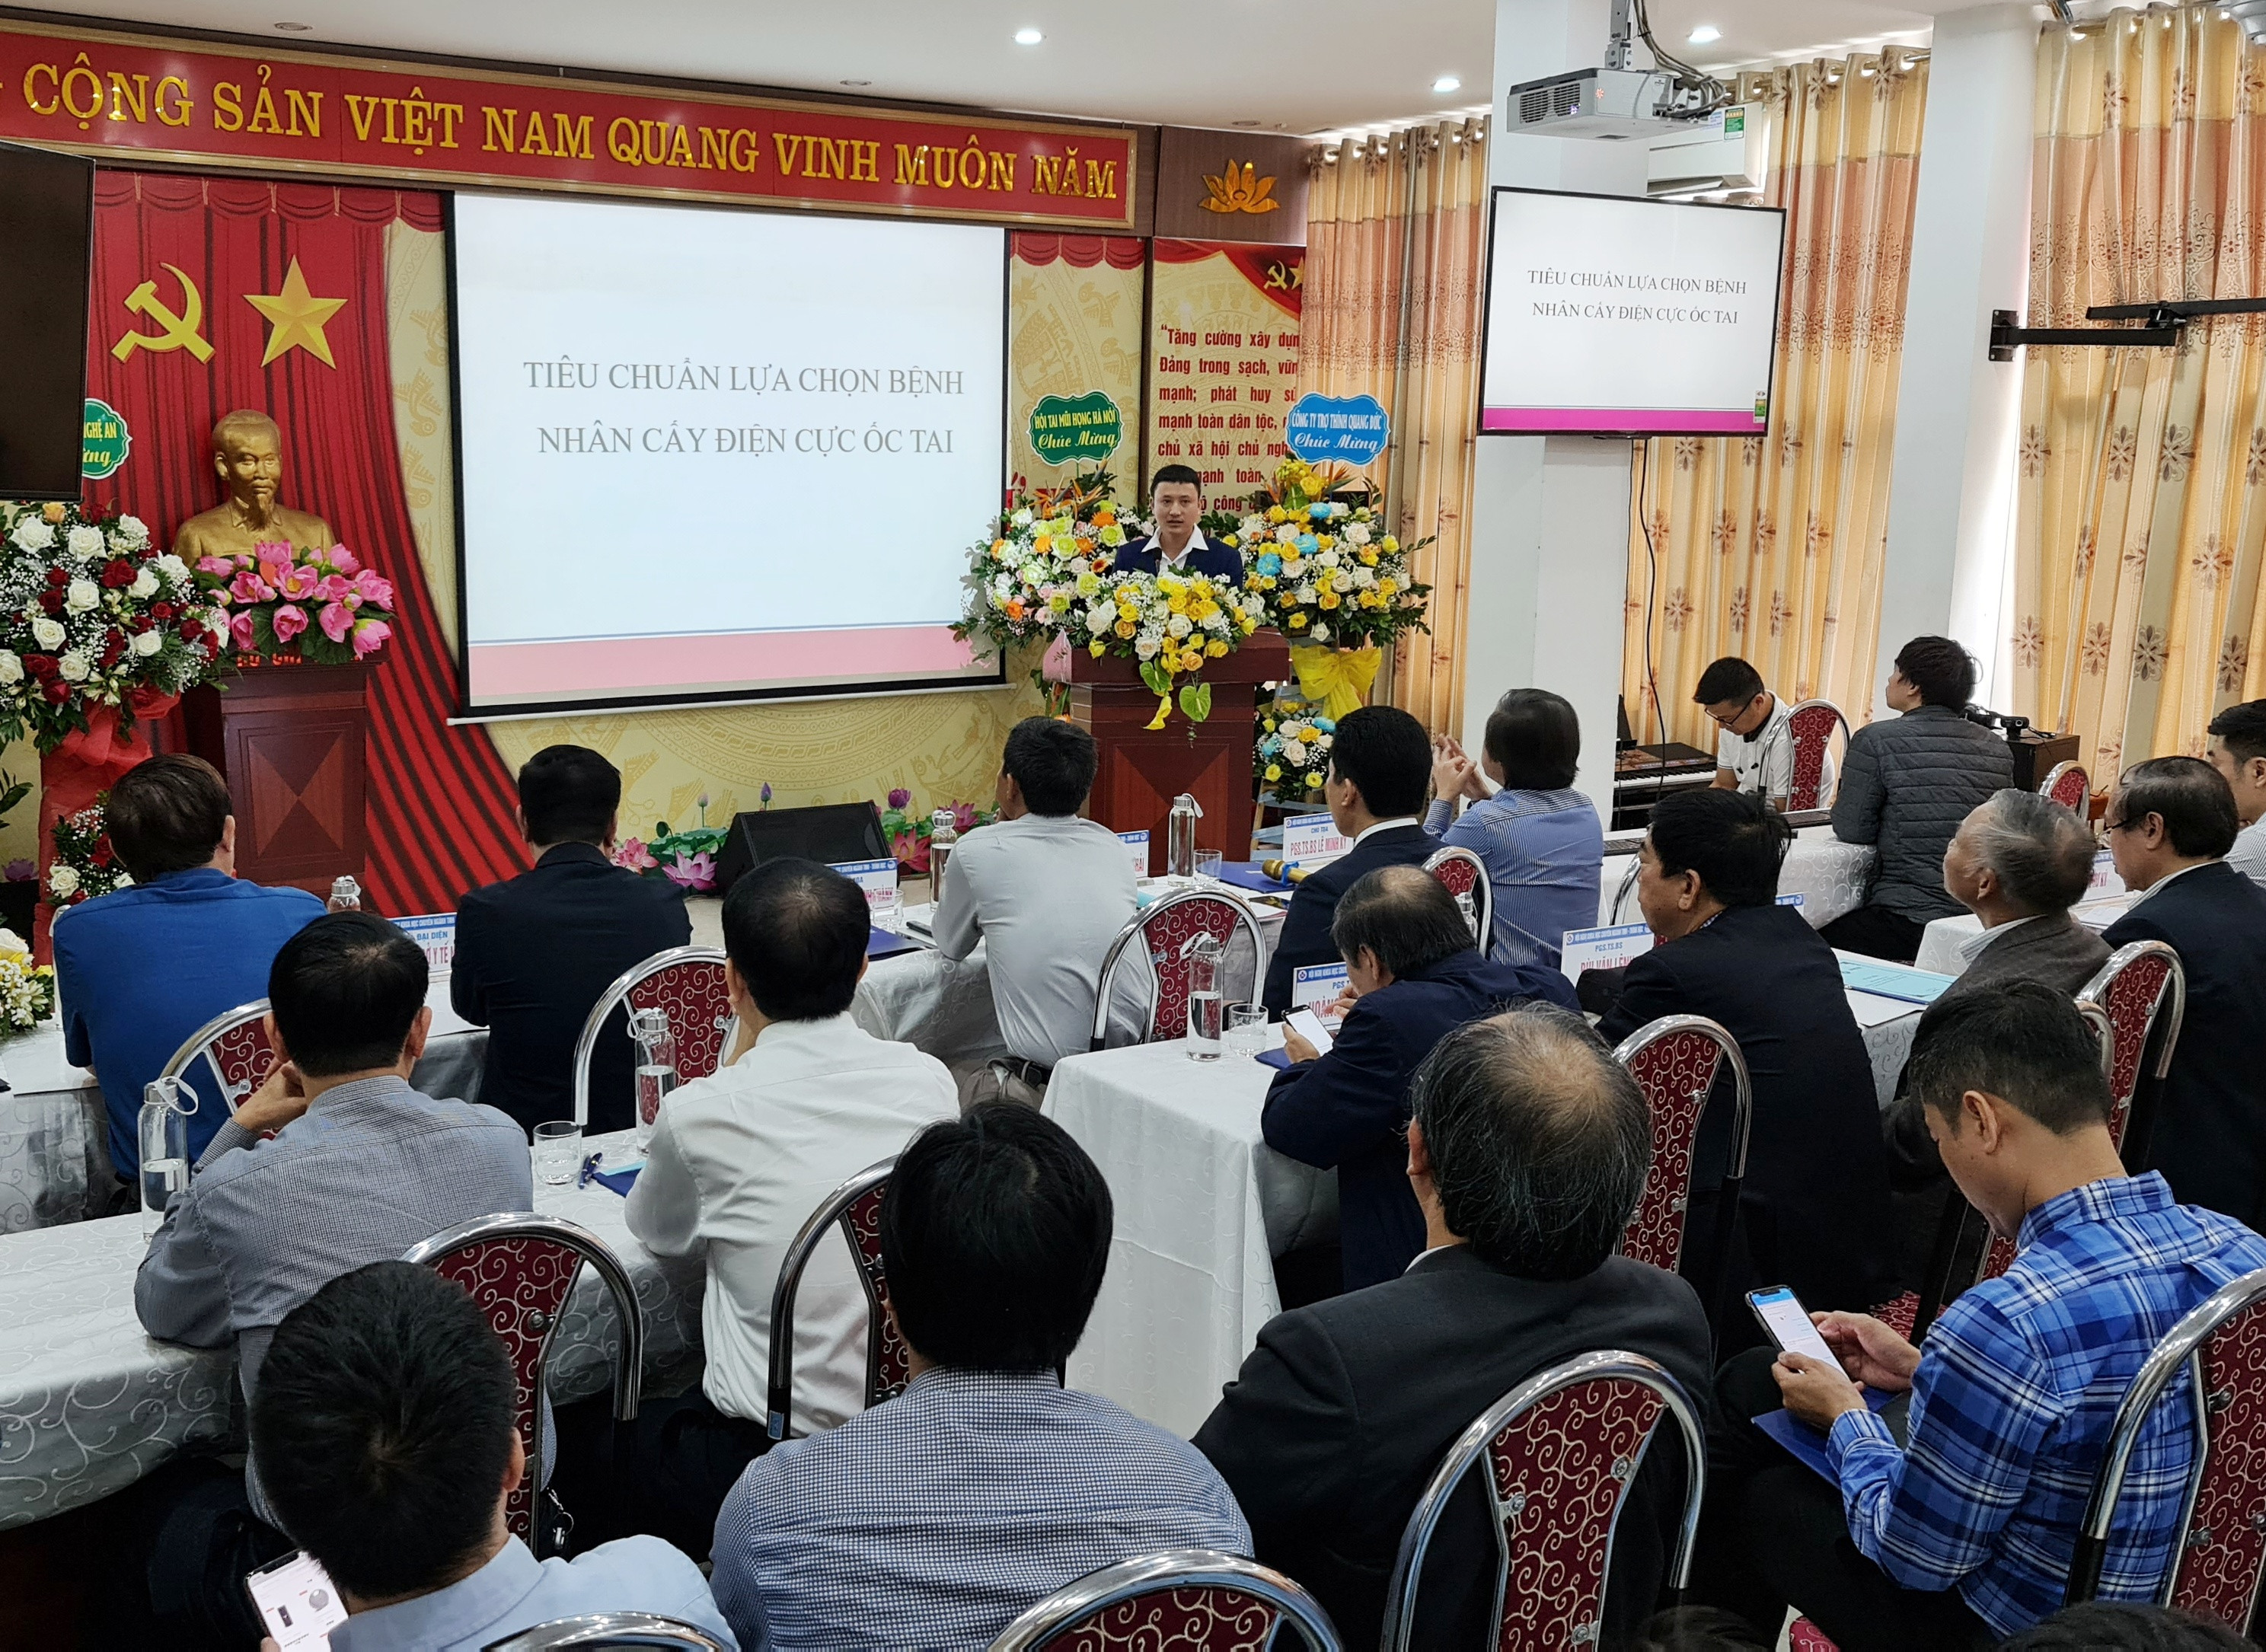 Hội nghị có sự tham dự của đông đảo các chuyên gia đầu ngành Tai Mũi Họng của cả nước và các nhà khoa học, bác sĩ trong tỉnh. Ảnh Hoàng Yến